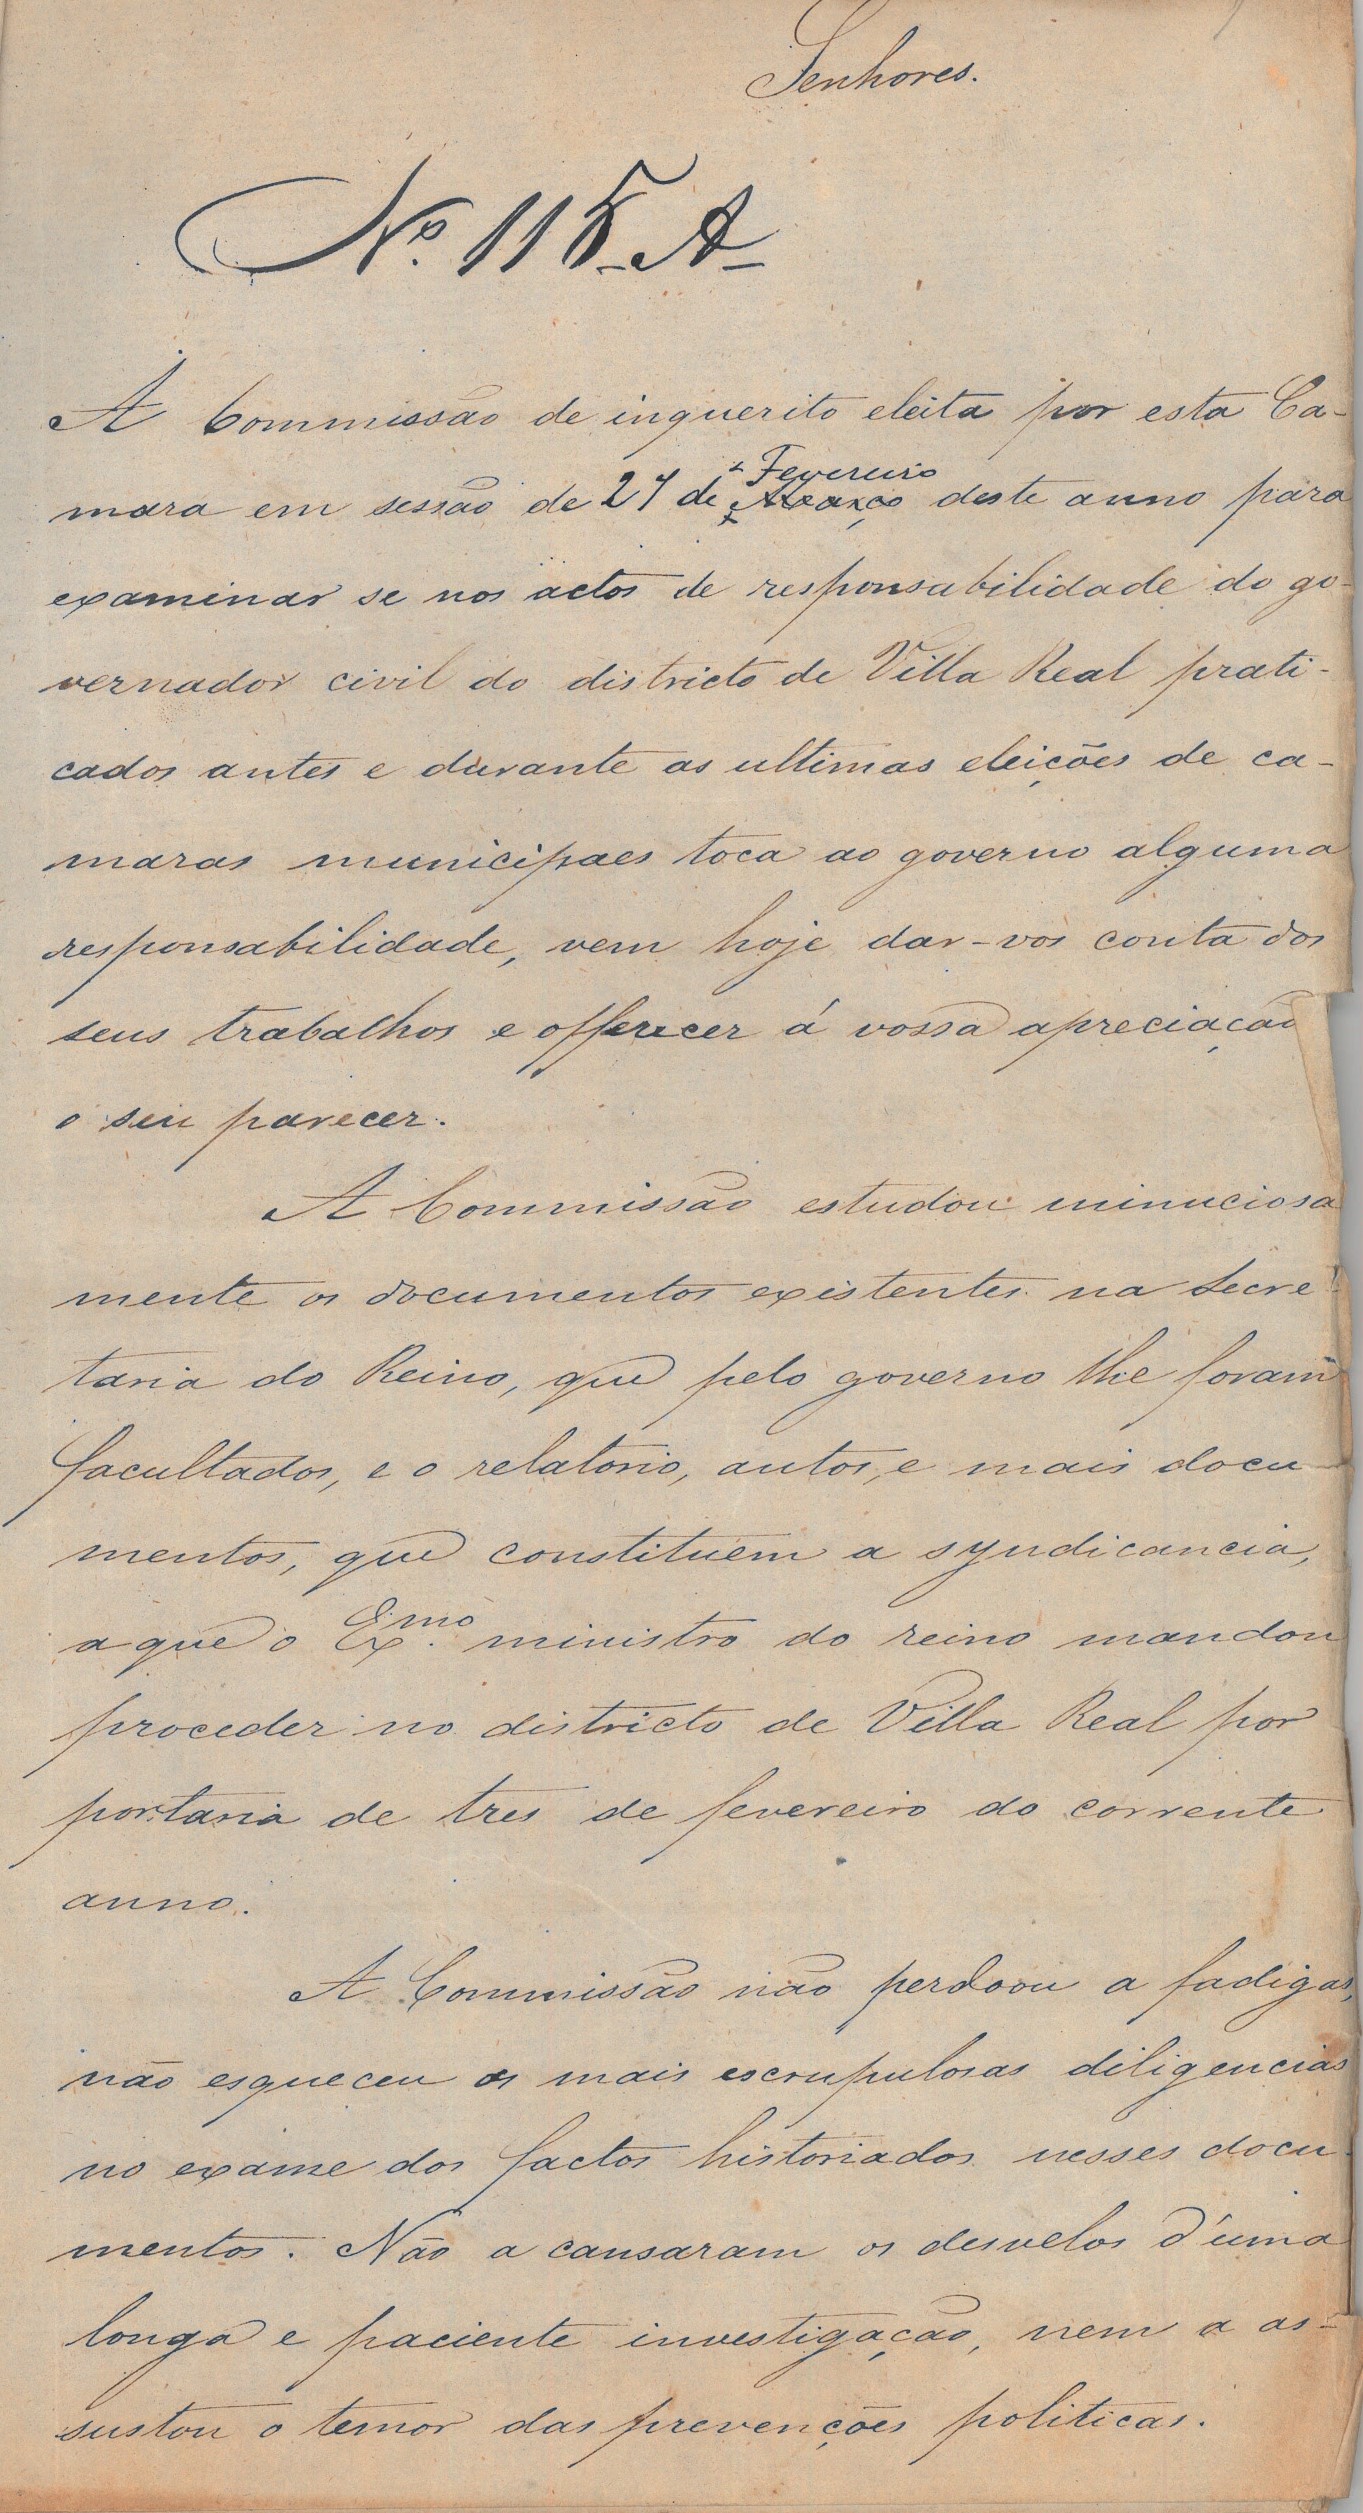 Ata n.º 108, de 24 de maio de 1864, onde se conclui não haver responsabilidade do Governo por ocasião dos acontecimentos das eleições municipais em Vila Real. Cota AHP: Secção I/II, cx. 556, mç. 480, doc. 115.